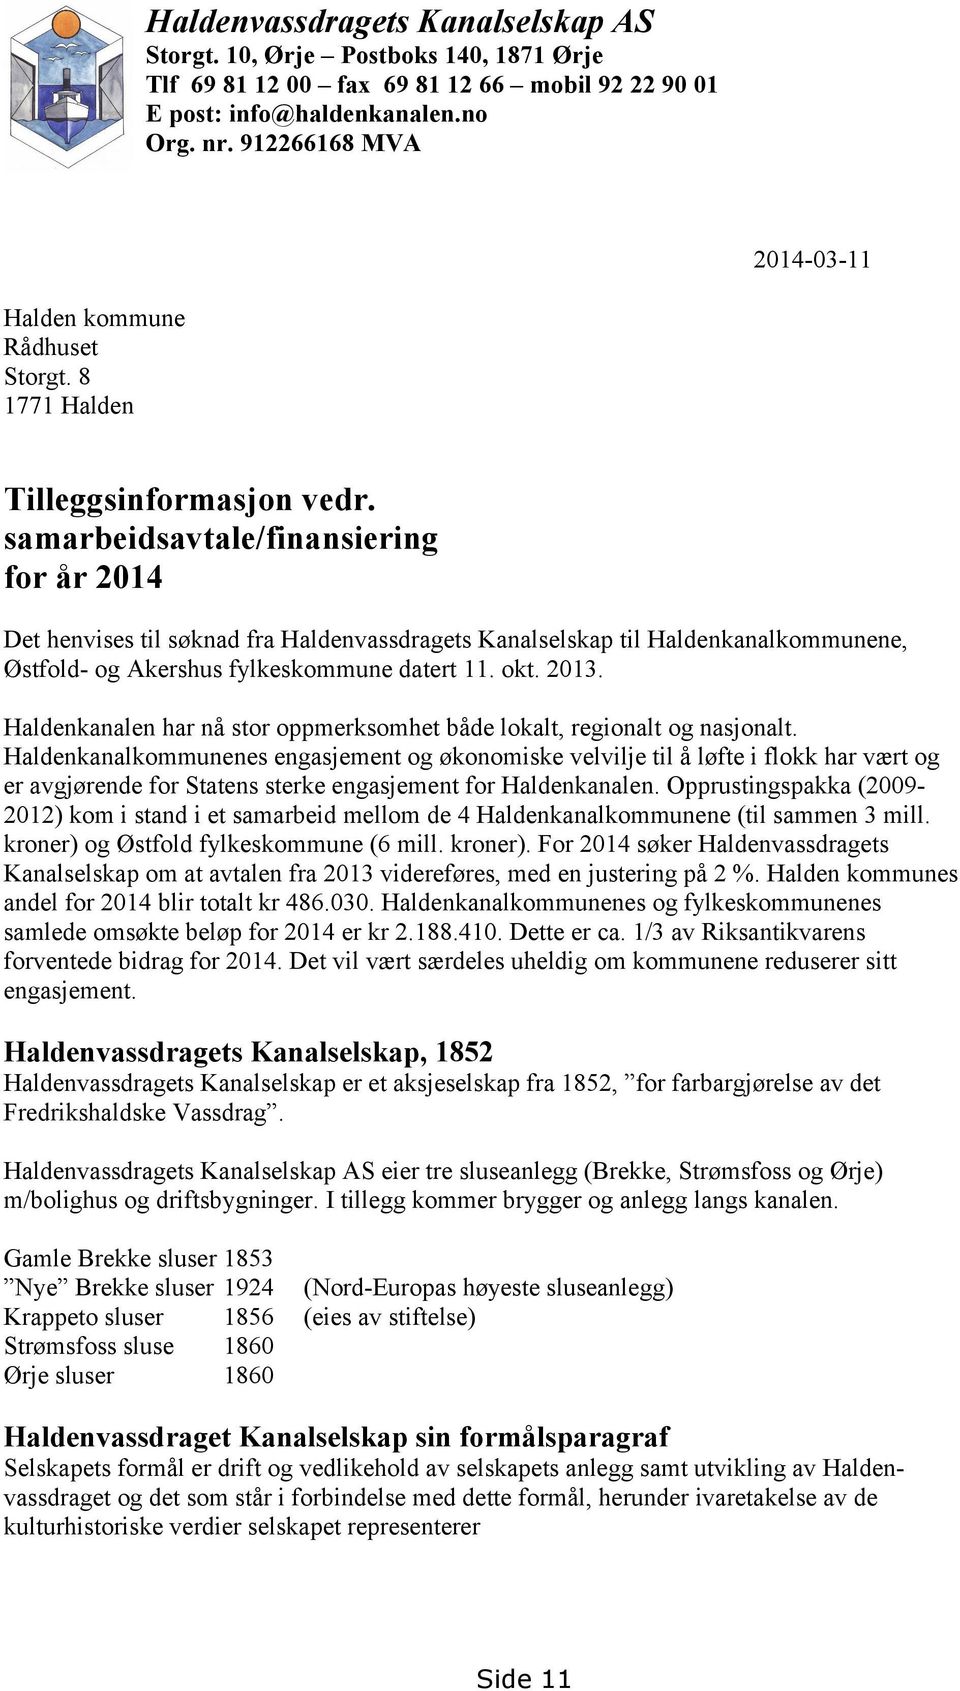 samarbeidsavtale/finansiering for år 2014 Det henvises til søknad fra Haldenvassdragets Kanalselskap til Haldenkanalkommunene, Østfold- og Akershus fylkeskommune datert 11. okt. 2013.